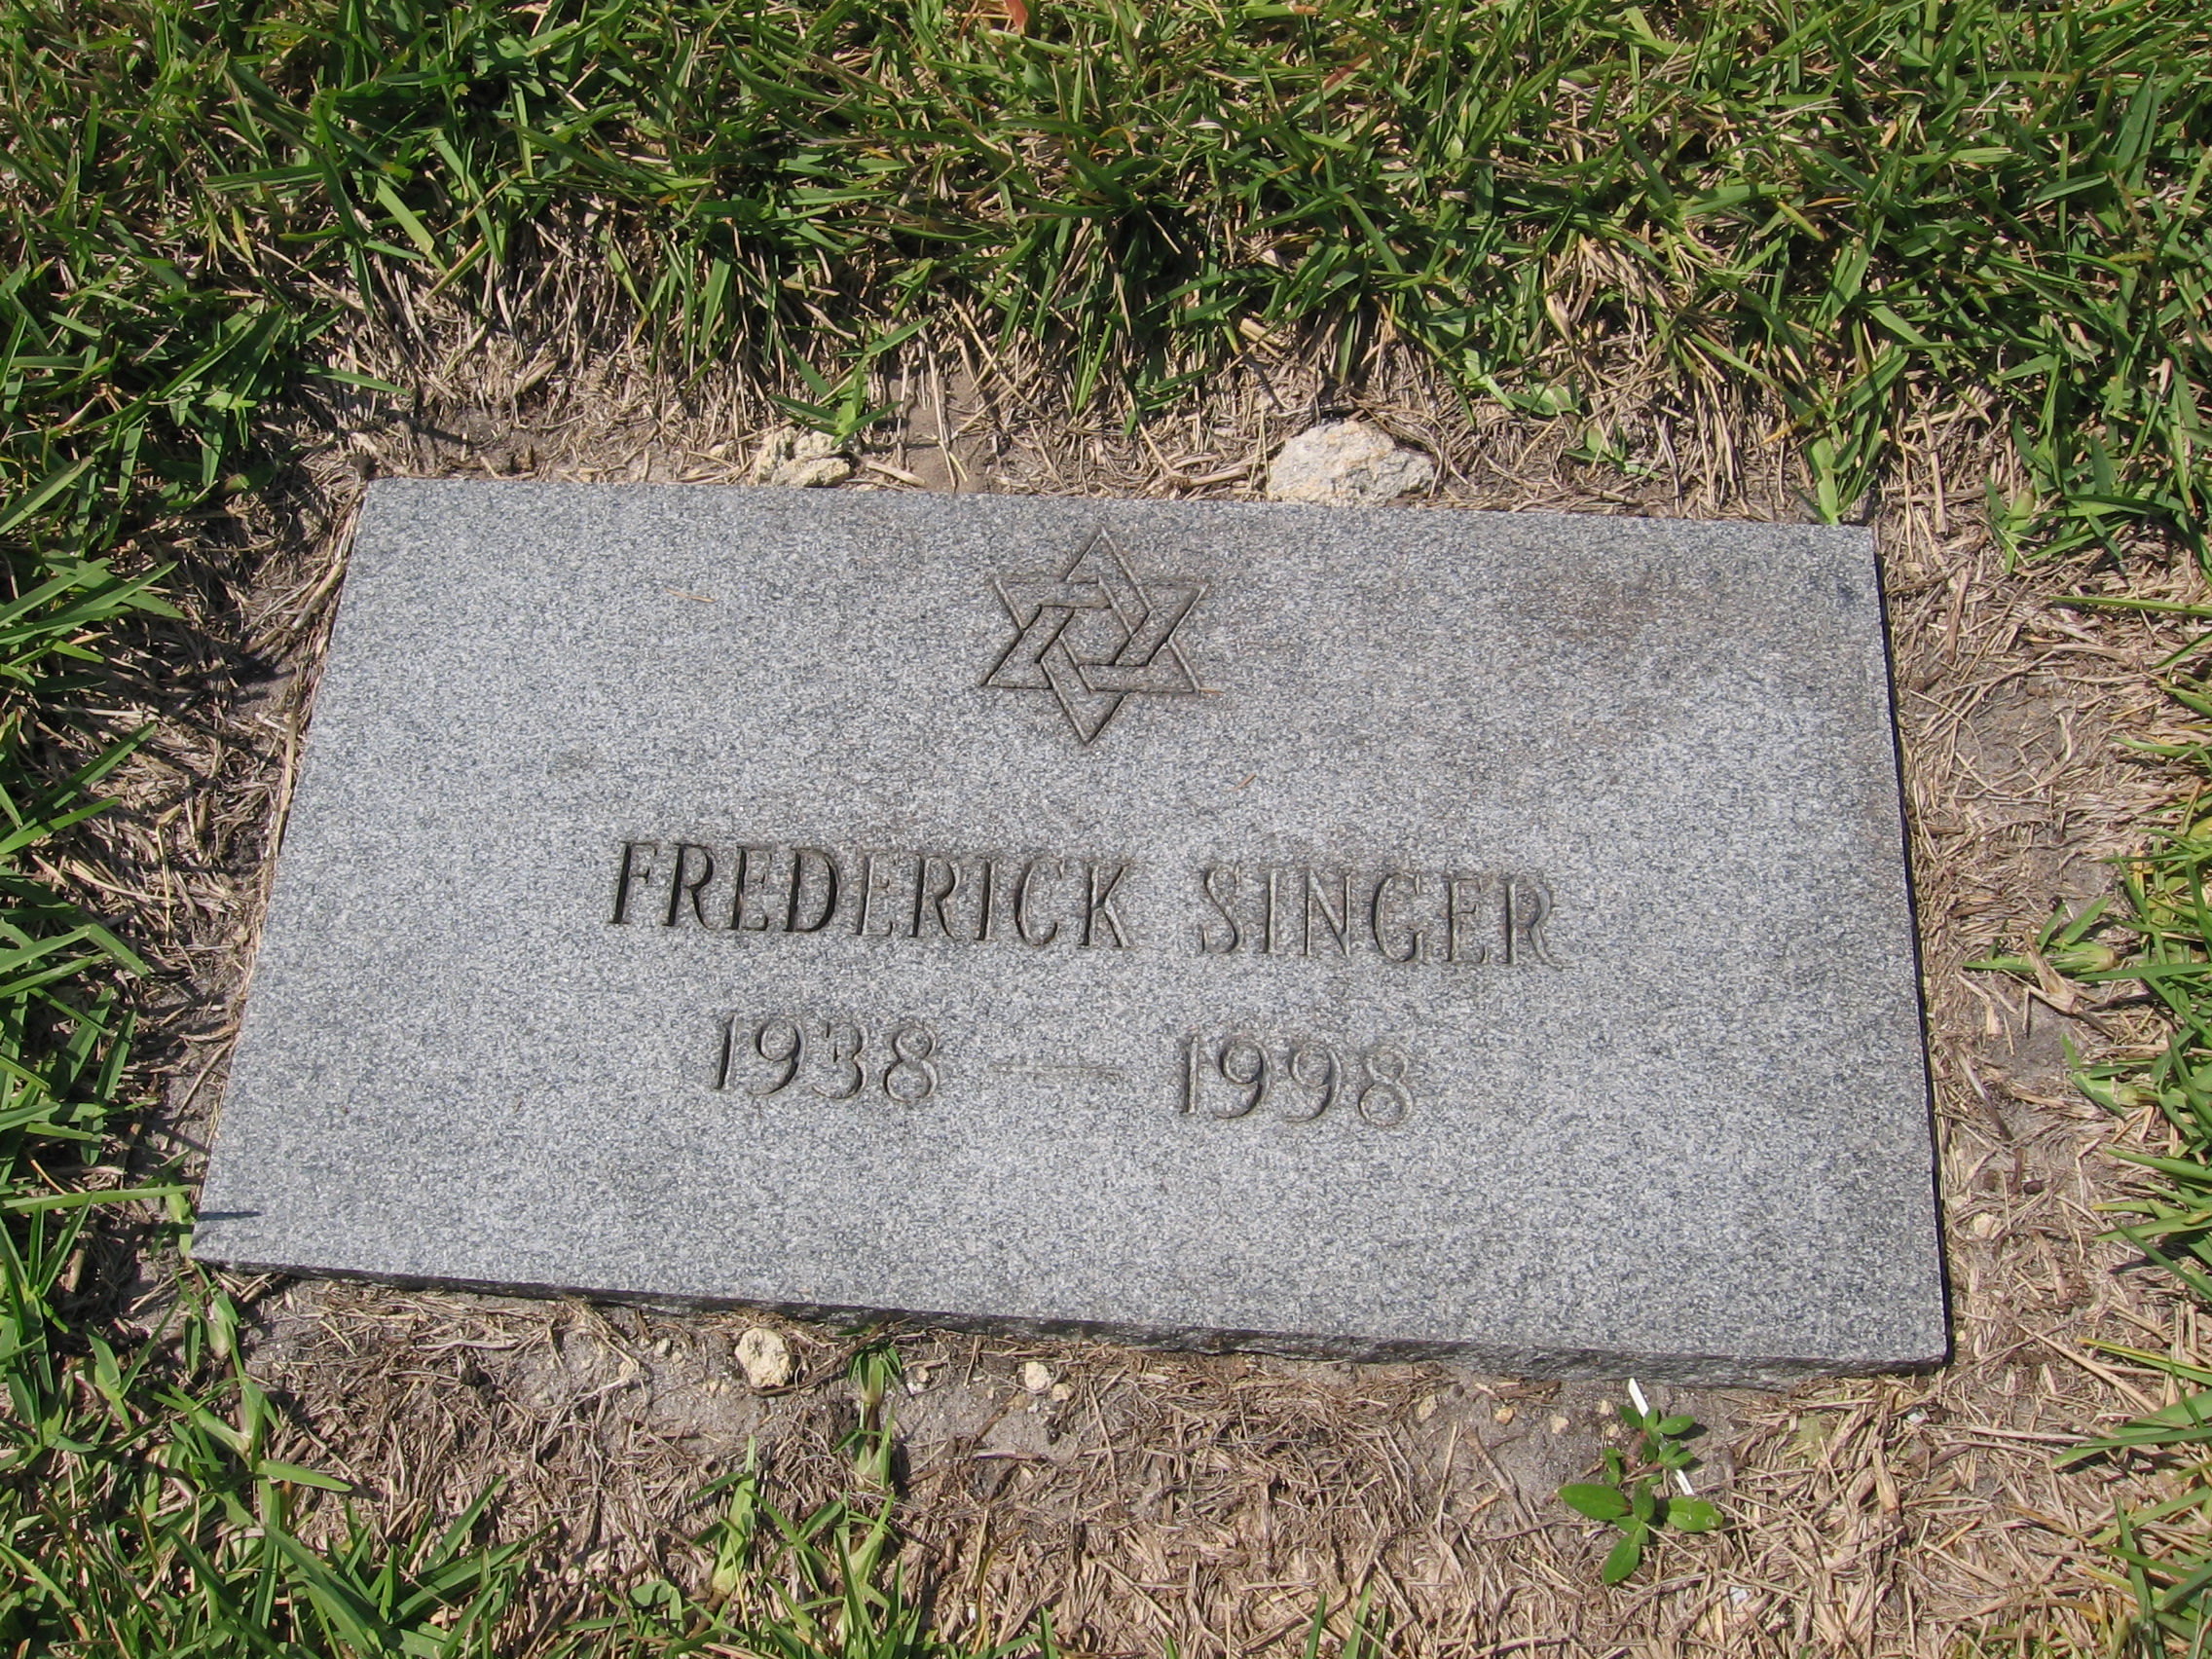 Frederick Singer